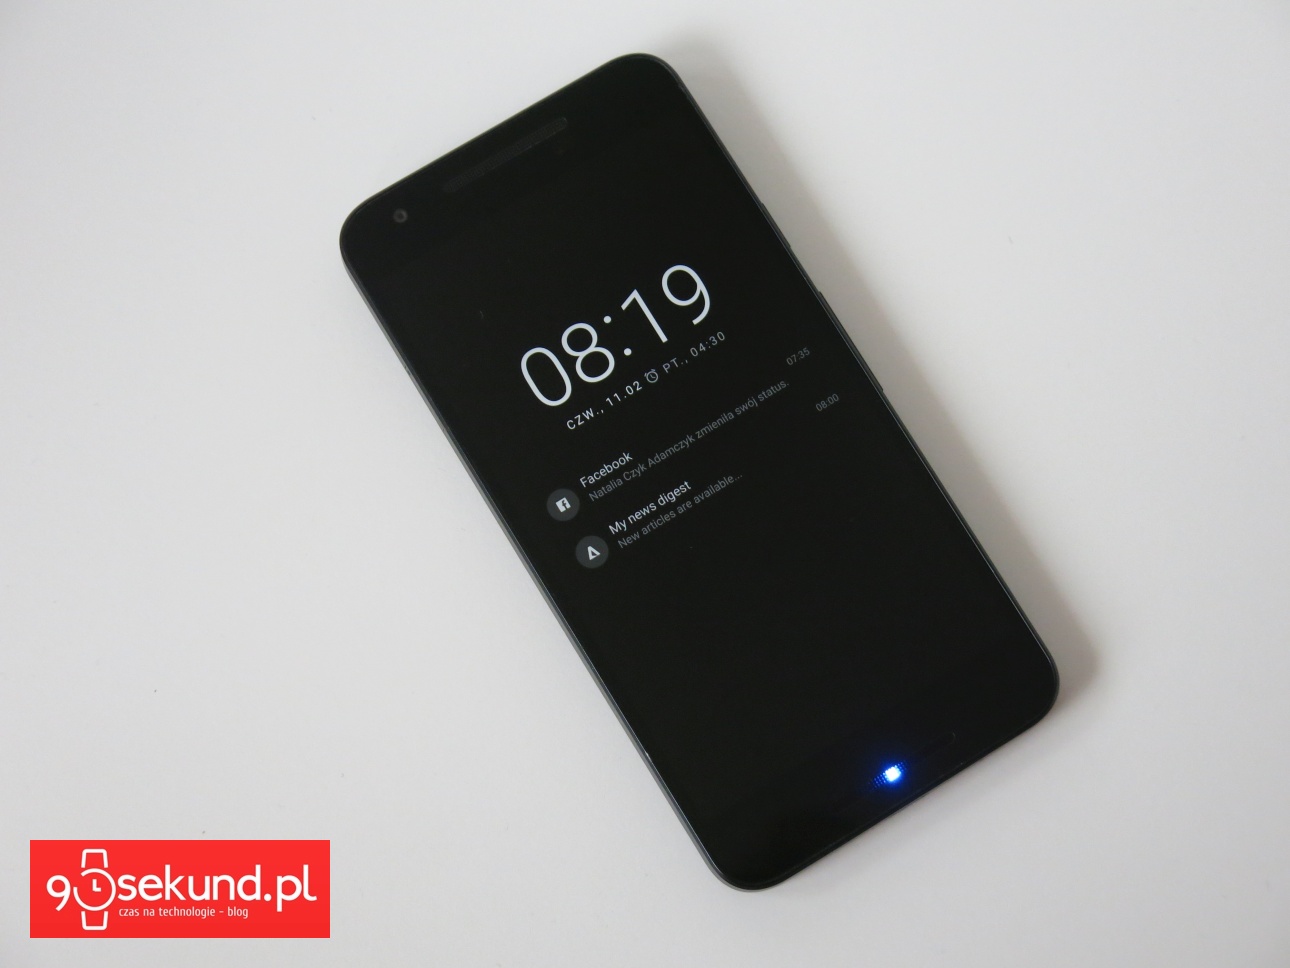 Test i recenzja LG Nexus 5X (LGH791) - ekran typu Glance oszczędzający energię - 90sekund.pl